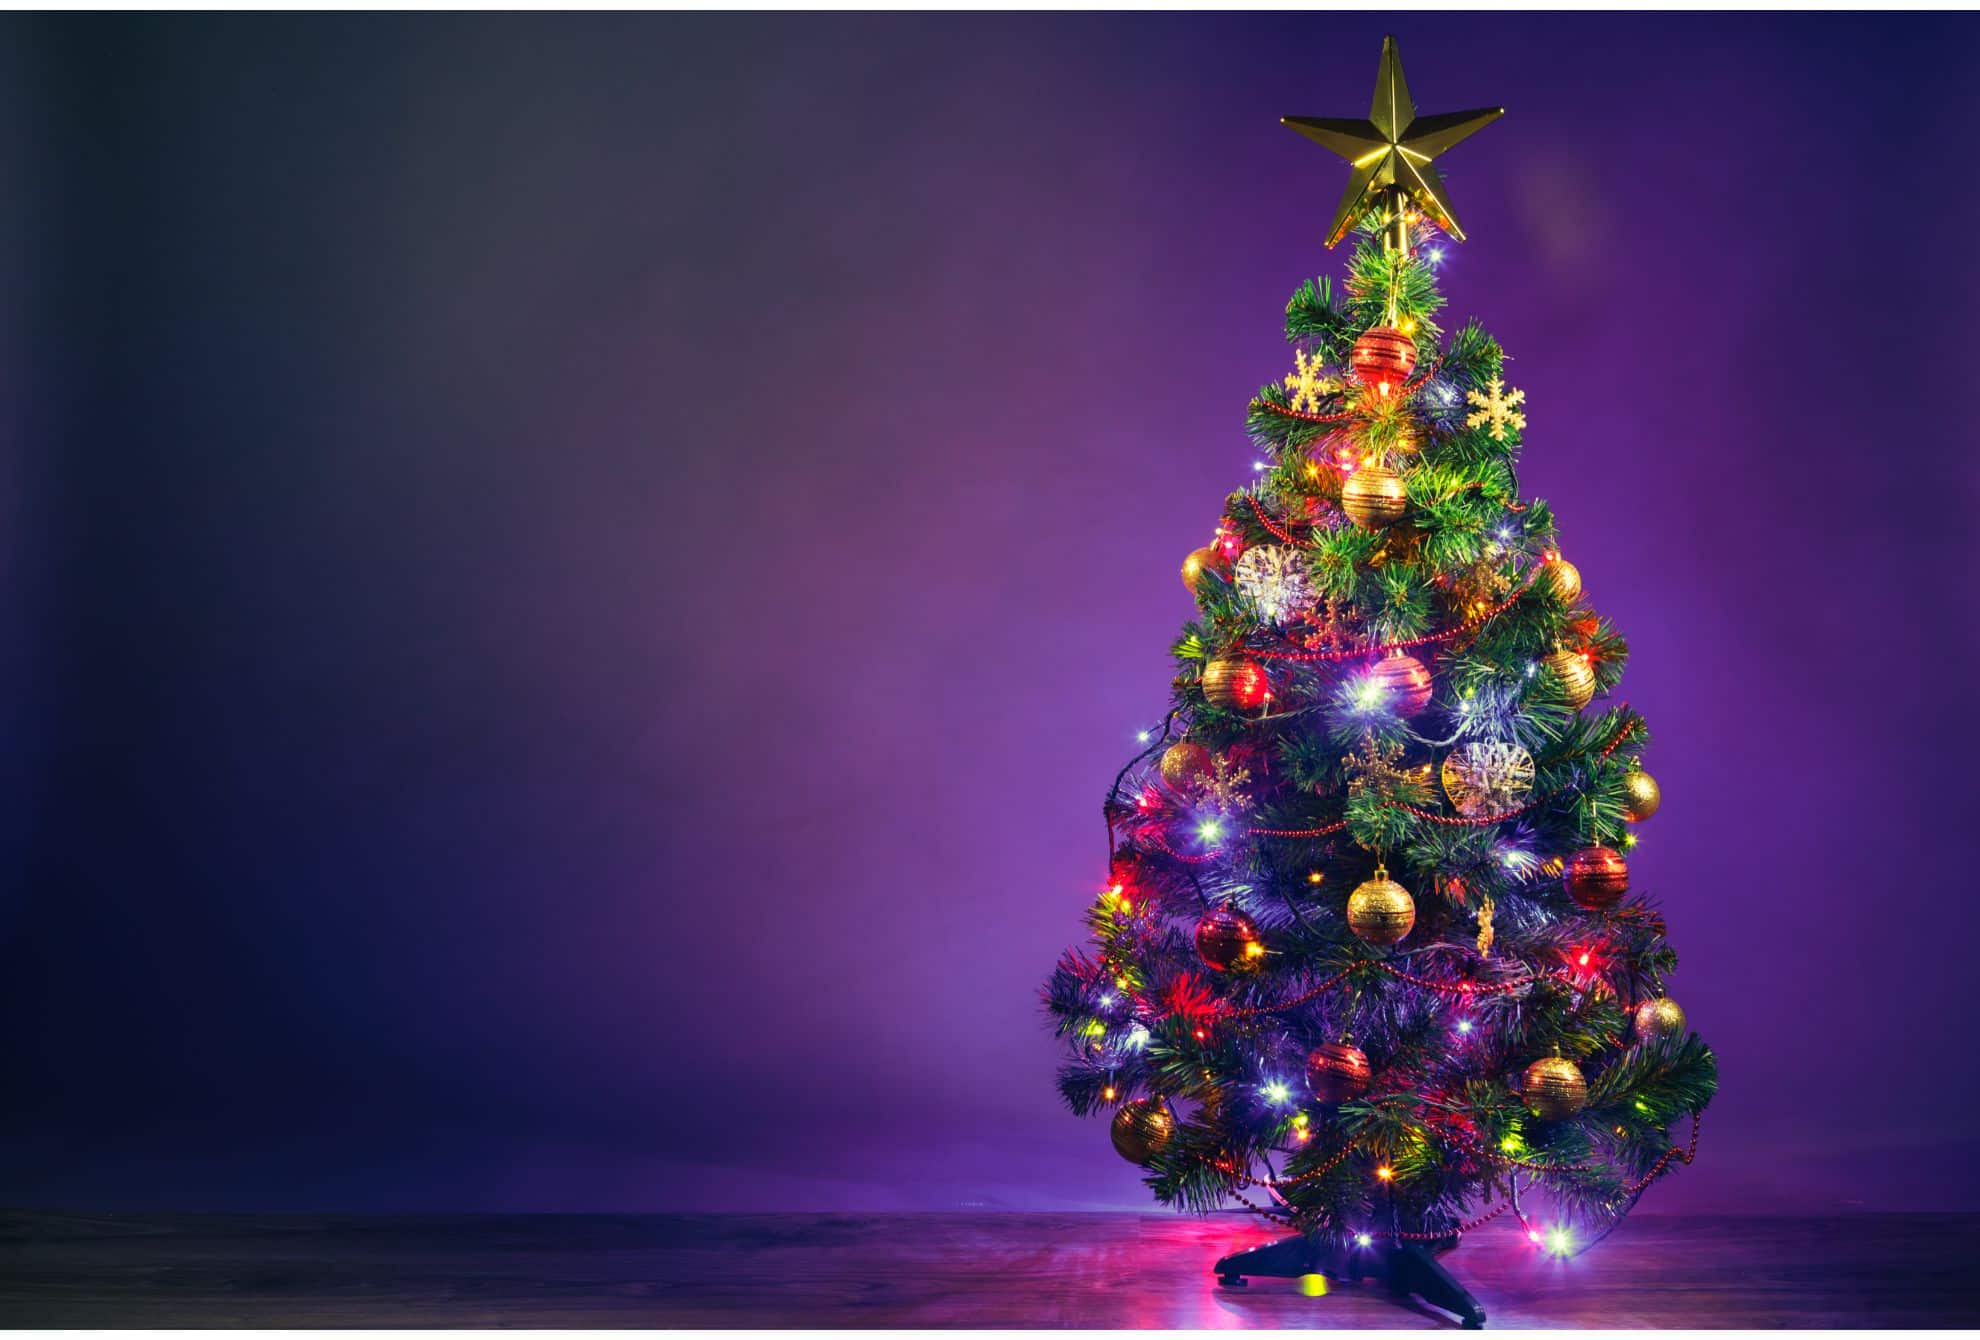 Qual o dia certo de montar a árvore de Natal?